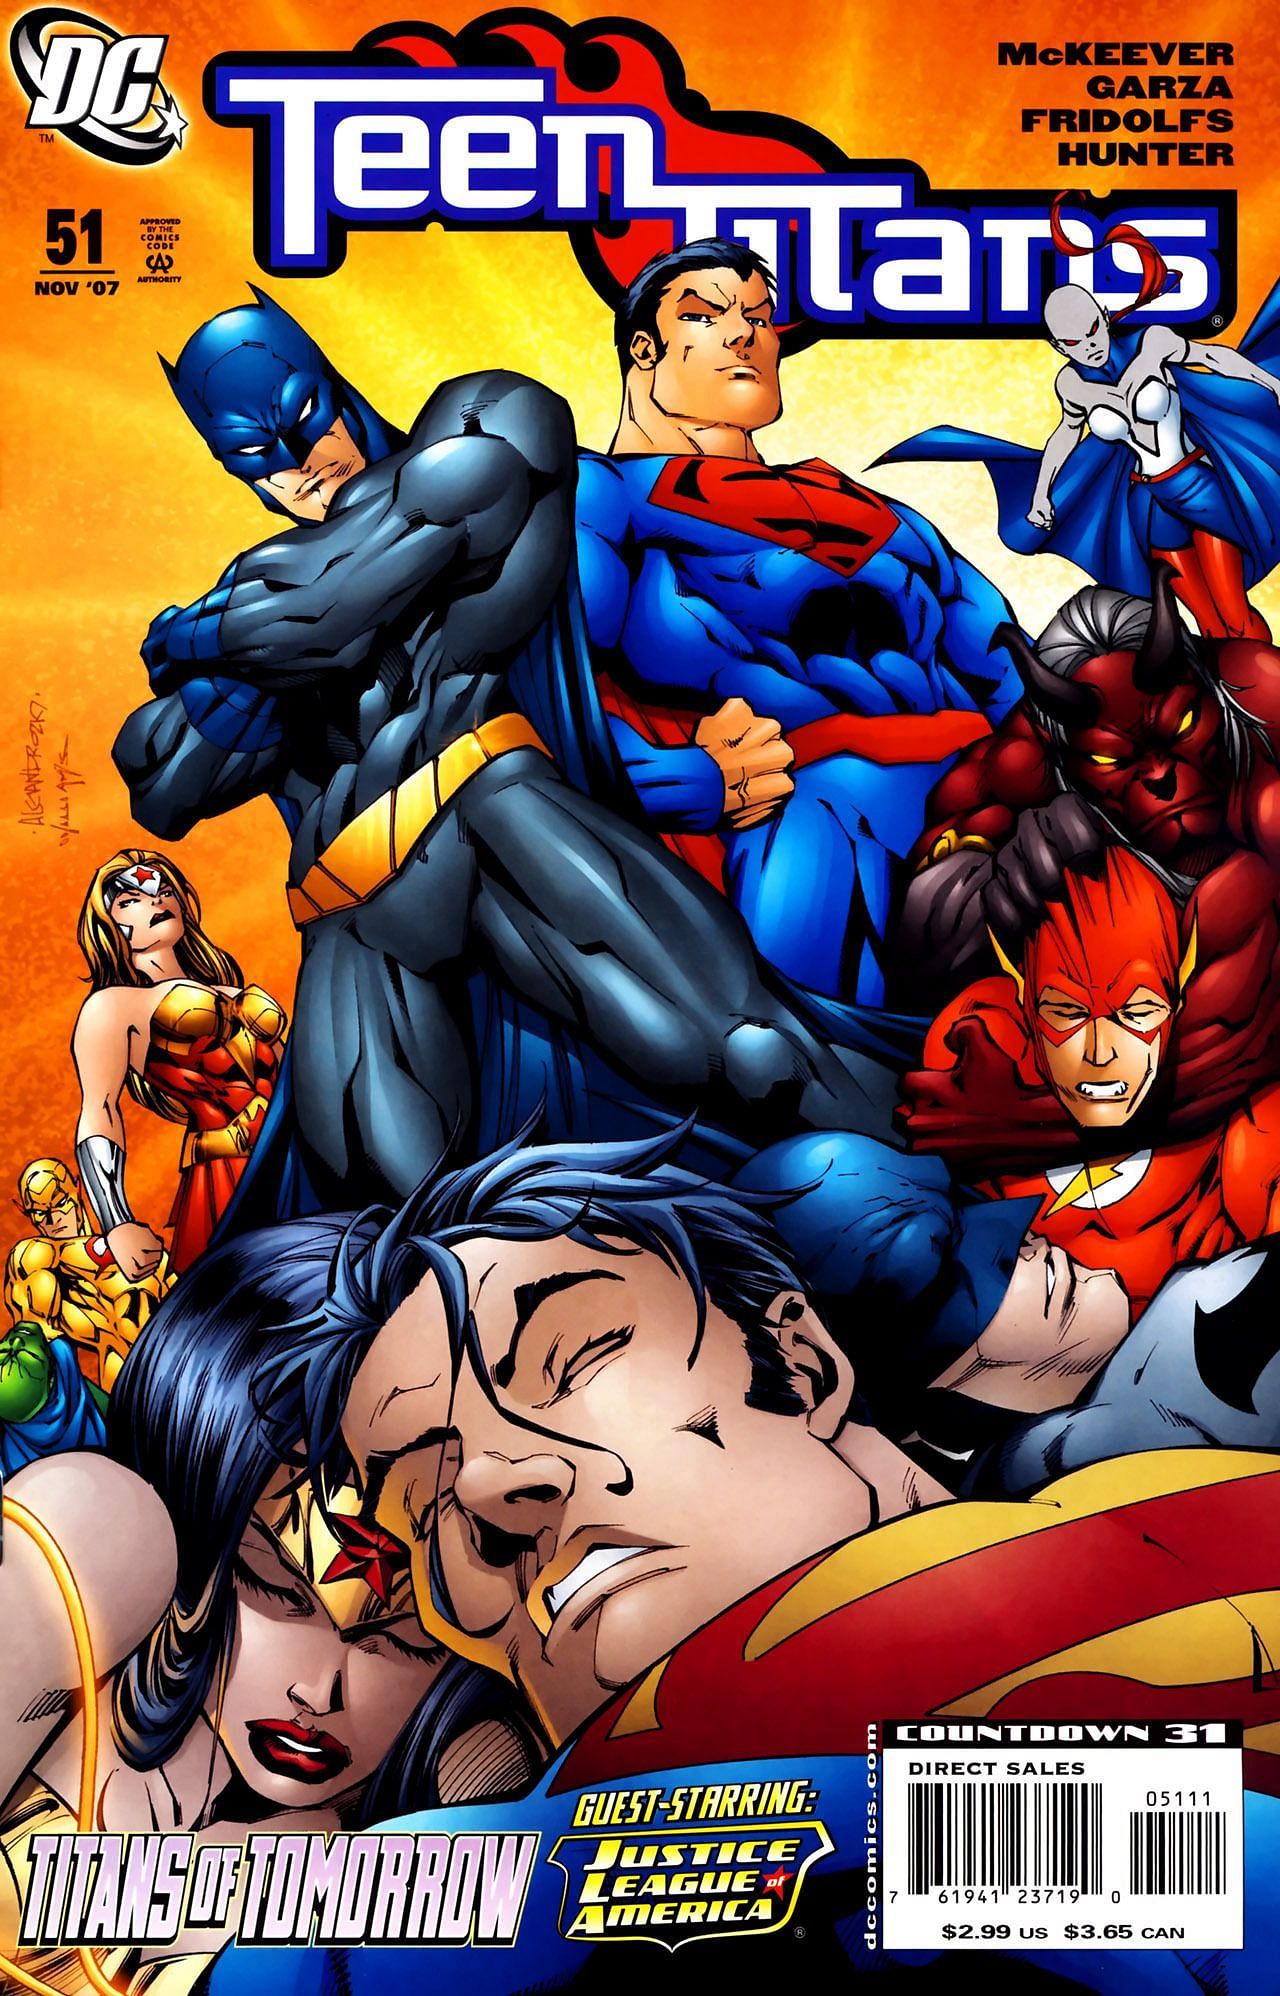 Teen Titans #51 (Image via DC Comics)